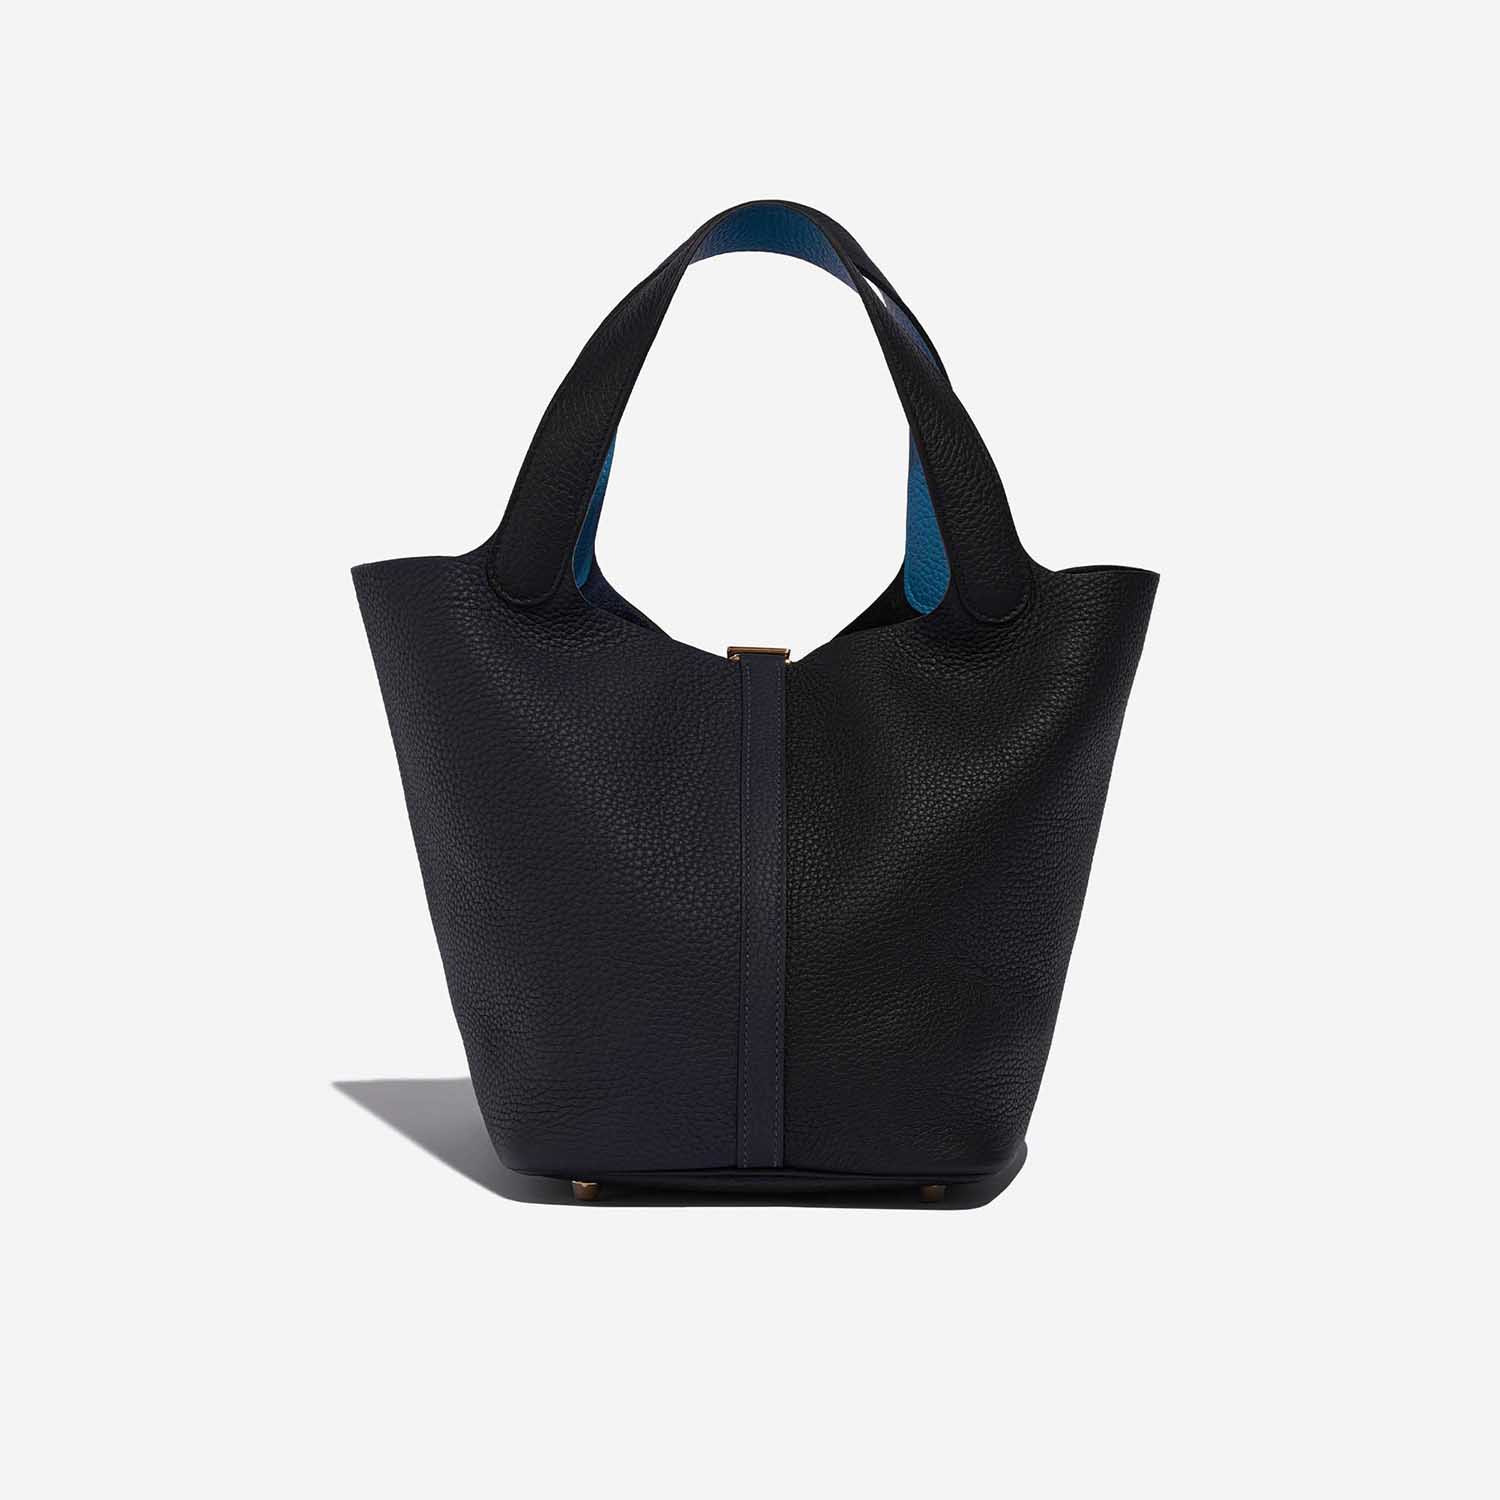 Pre-owned Hermès bag Picotin 22 Taurillon Clemence Blue Nuit / Black / Blue Frida Blue Back | Sell your designer bag on Saclab.com